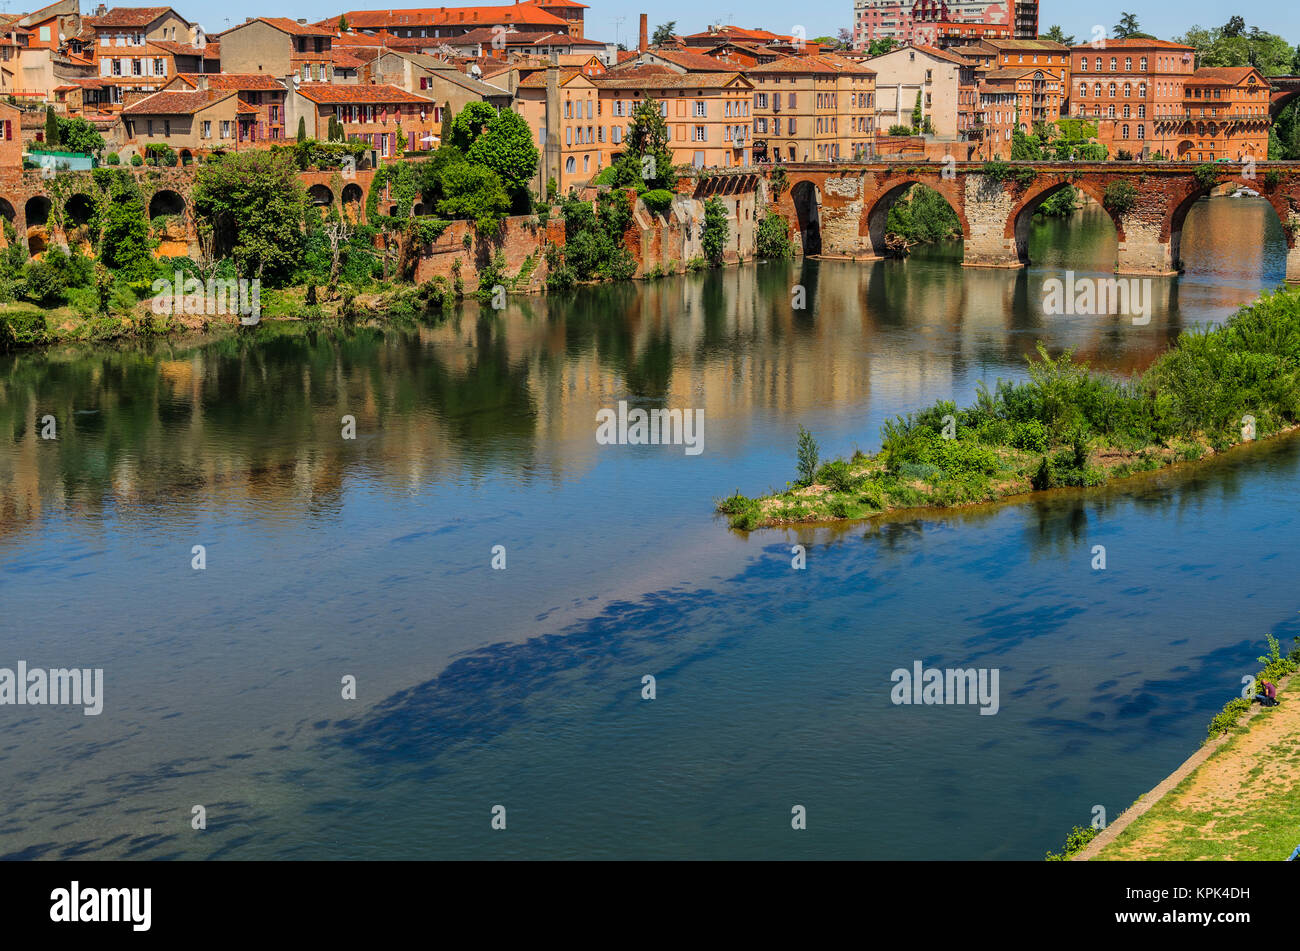 Den Fluss Tarn gibt den Namen der Abteilung, in der die antike Stadt der französischen von Albi, das wir in das Bild, das von den Römern gegründet wurde, siehe WI Stockfoto